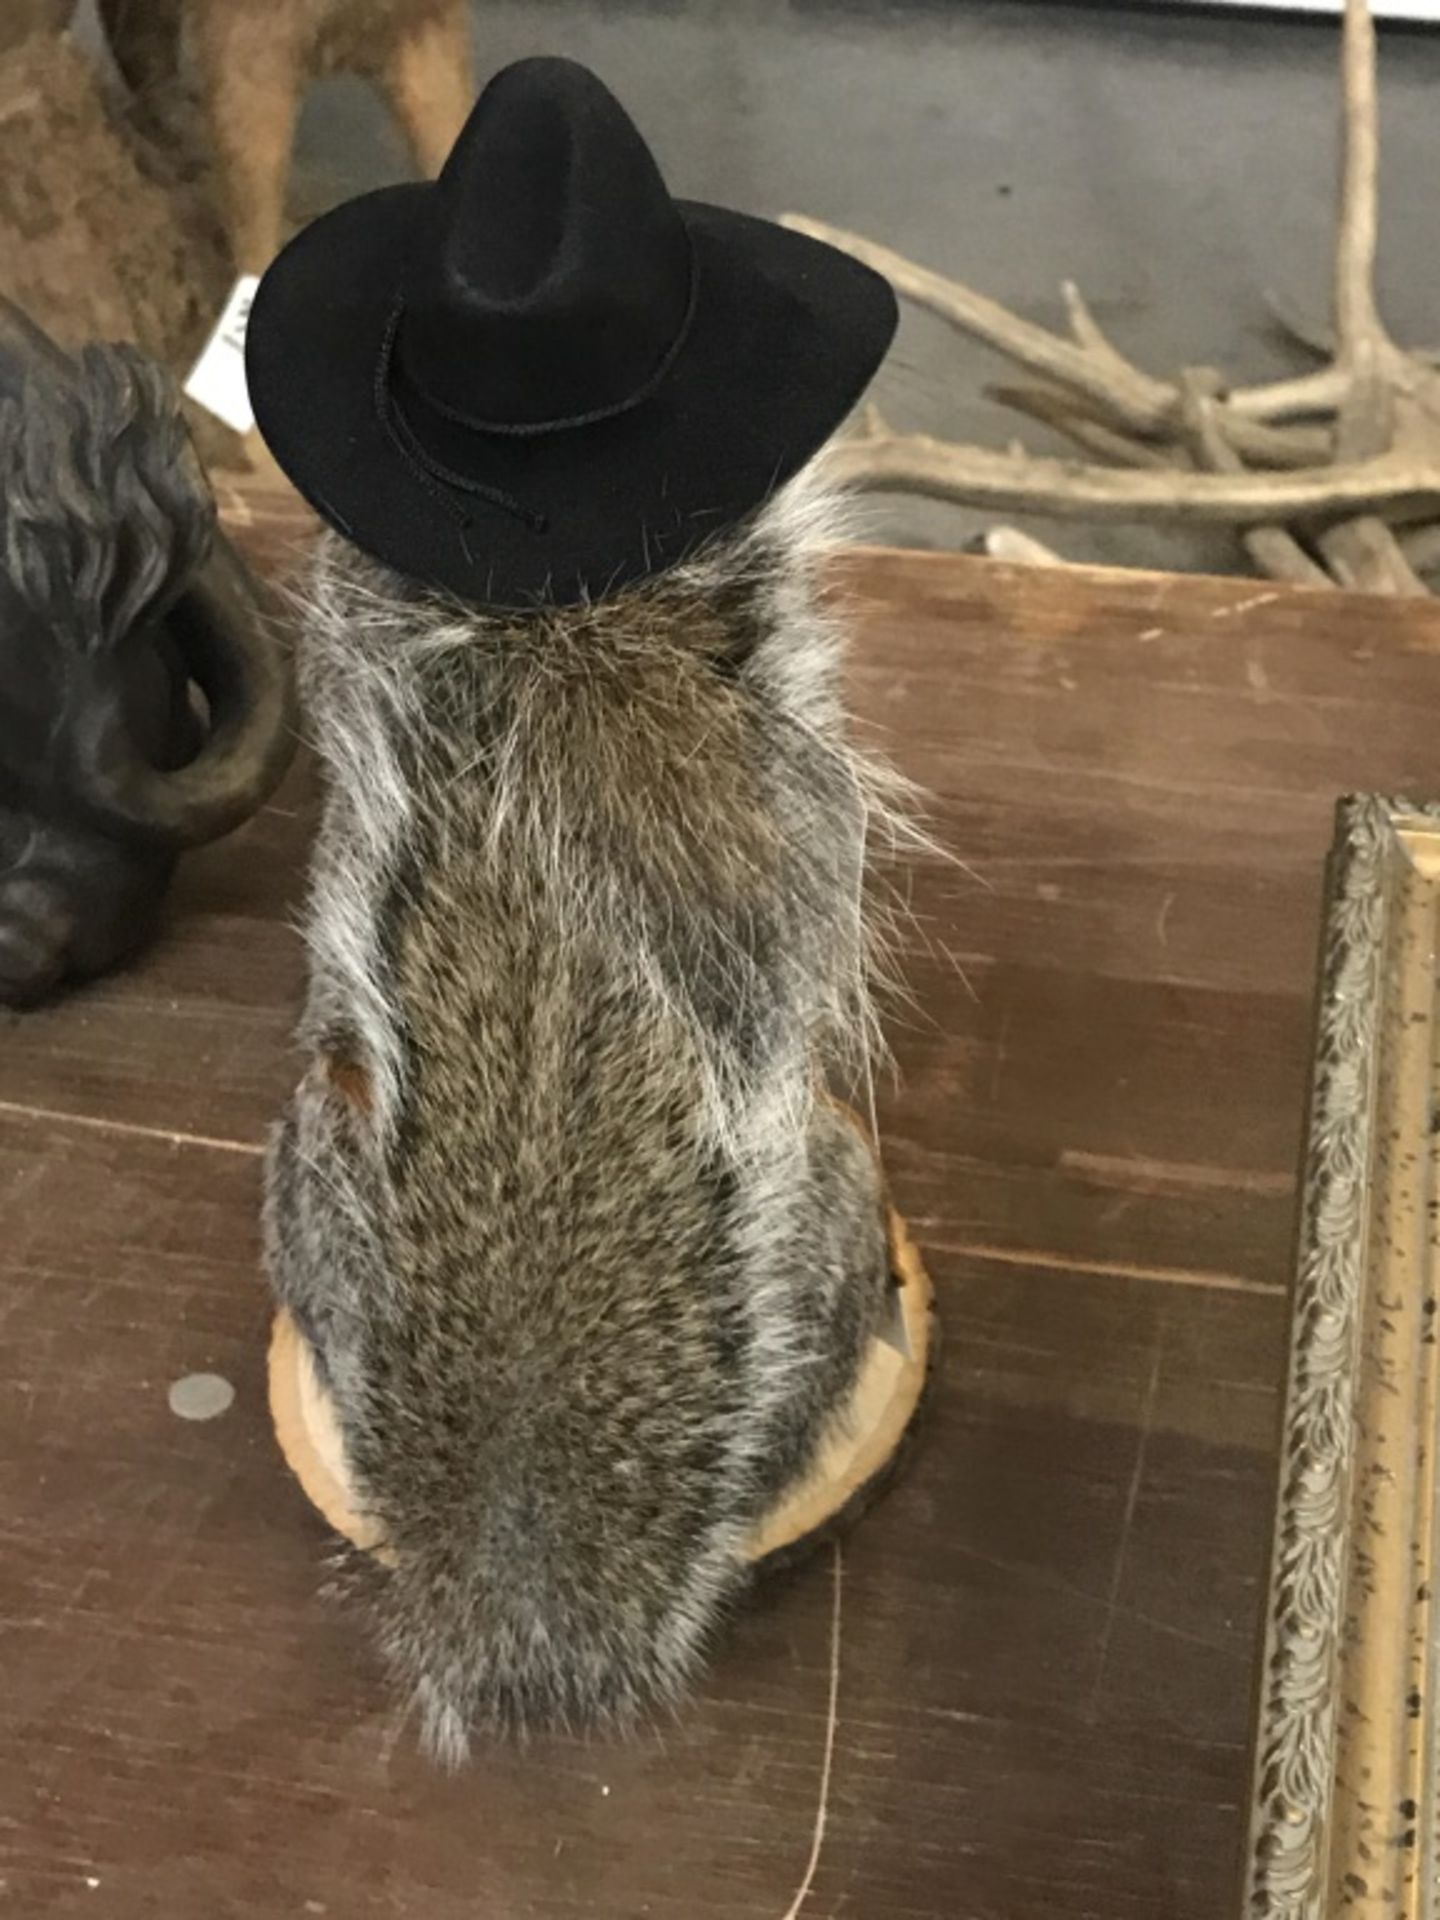 Cowboy Squirrel - Image 15 of 17